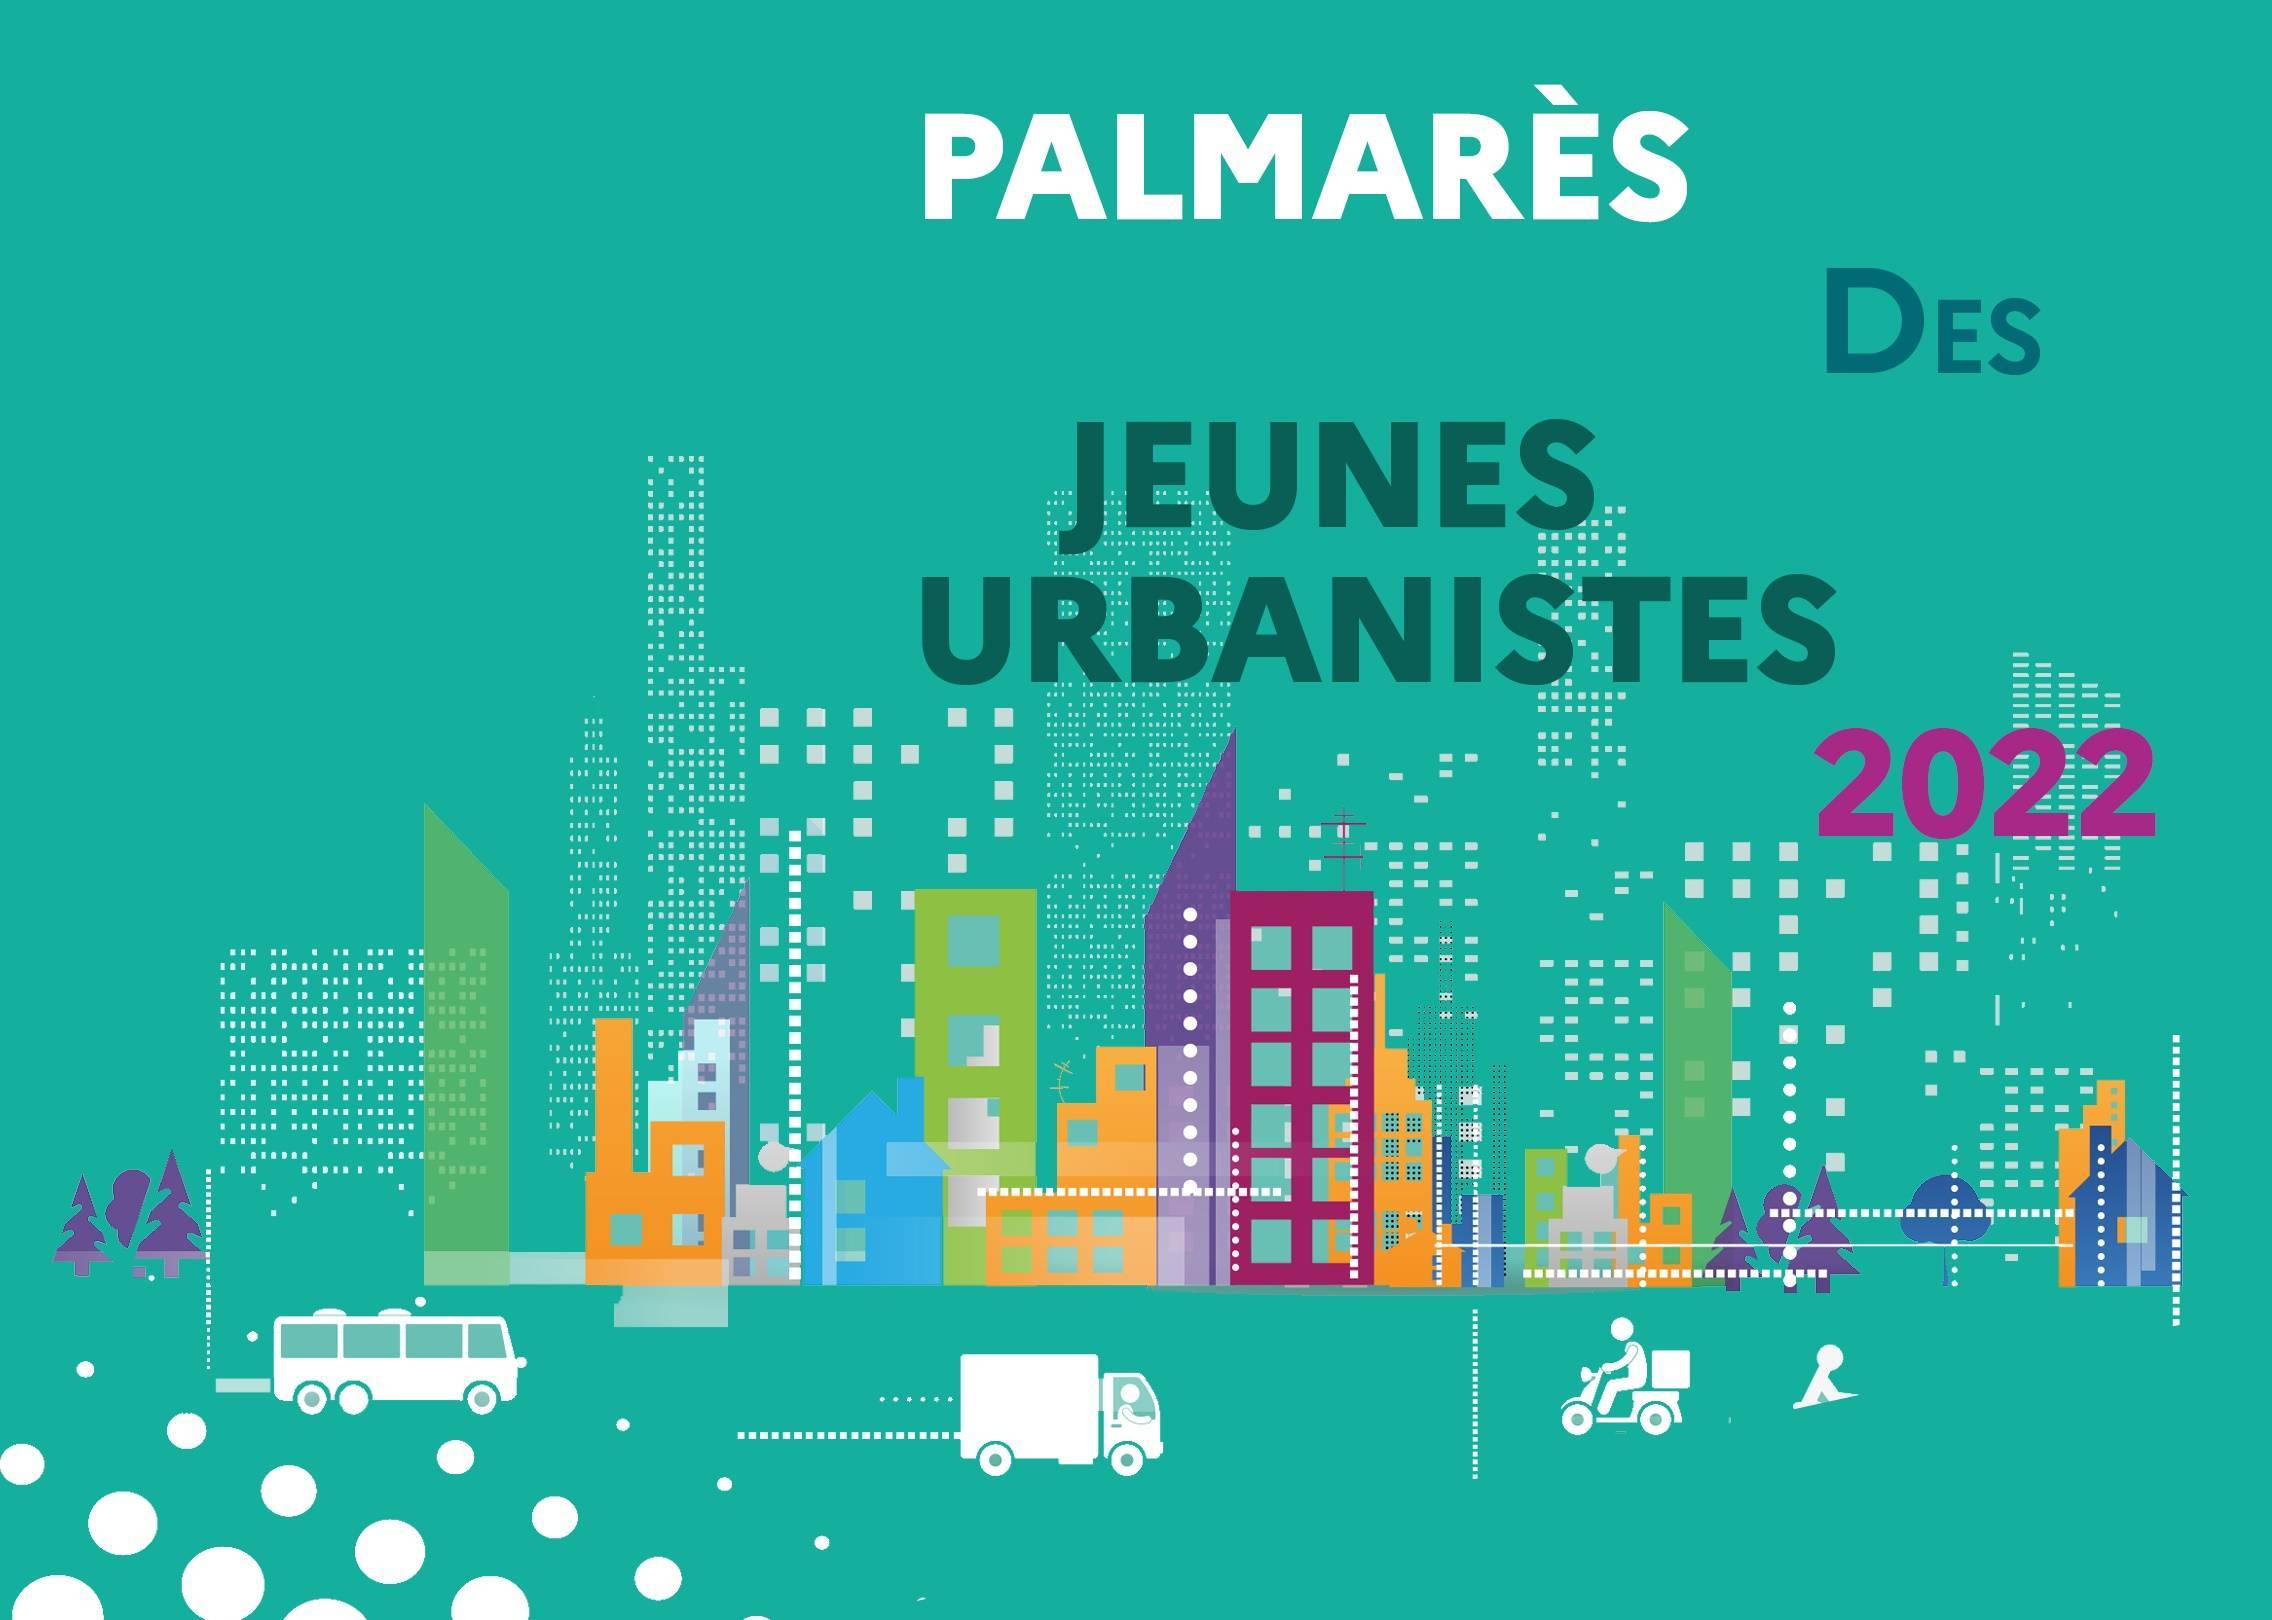 Palmarès des Jeunes Urbanistes 2022_Visuel.jpg